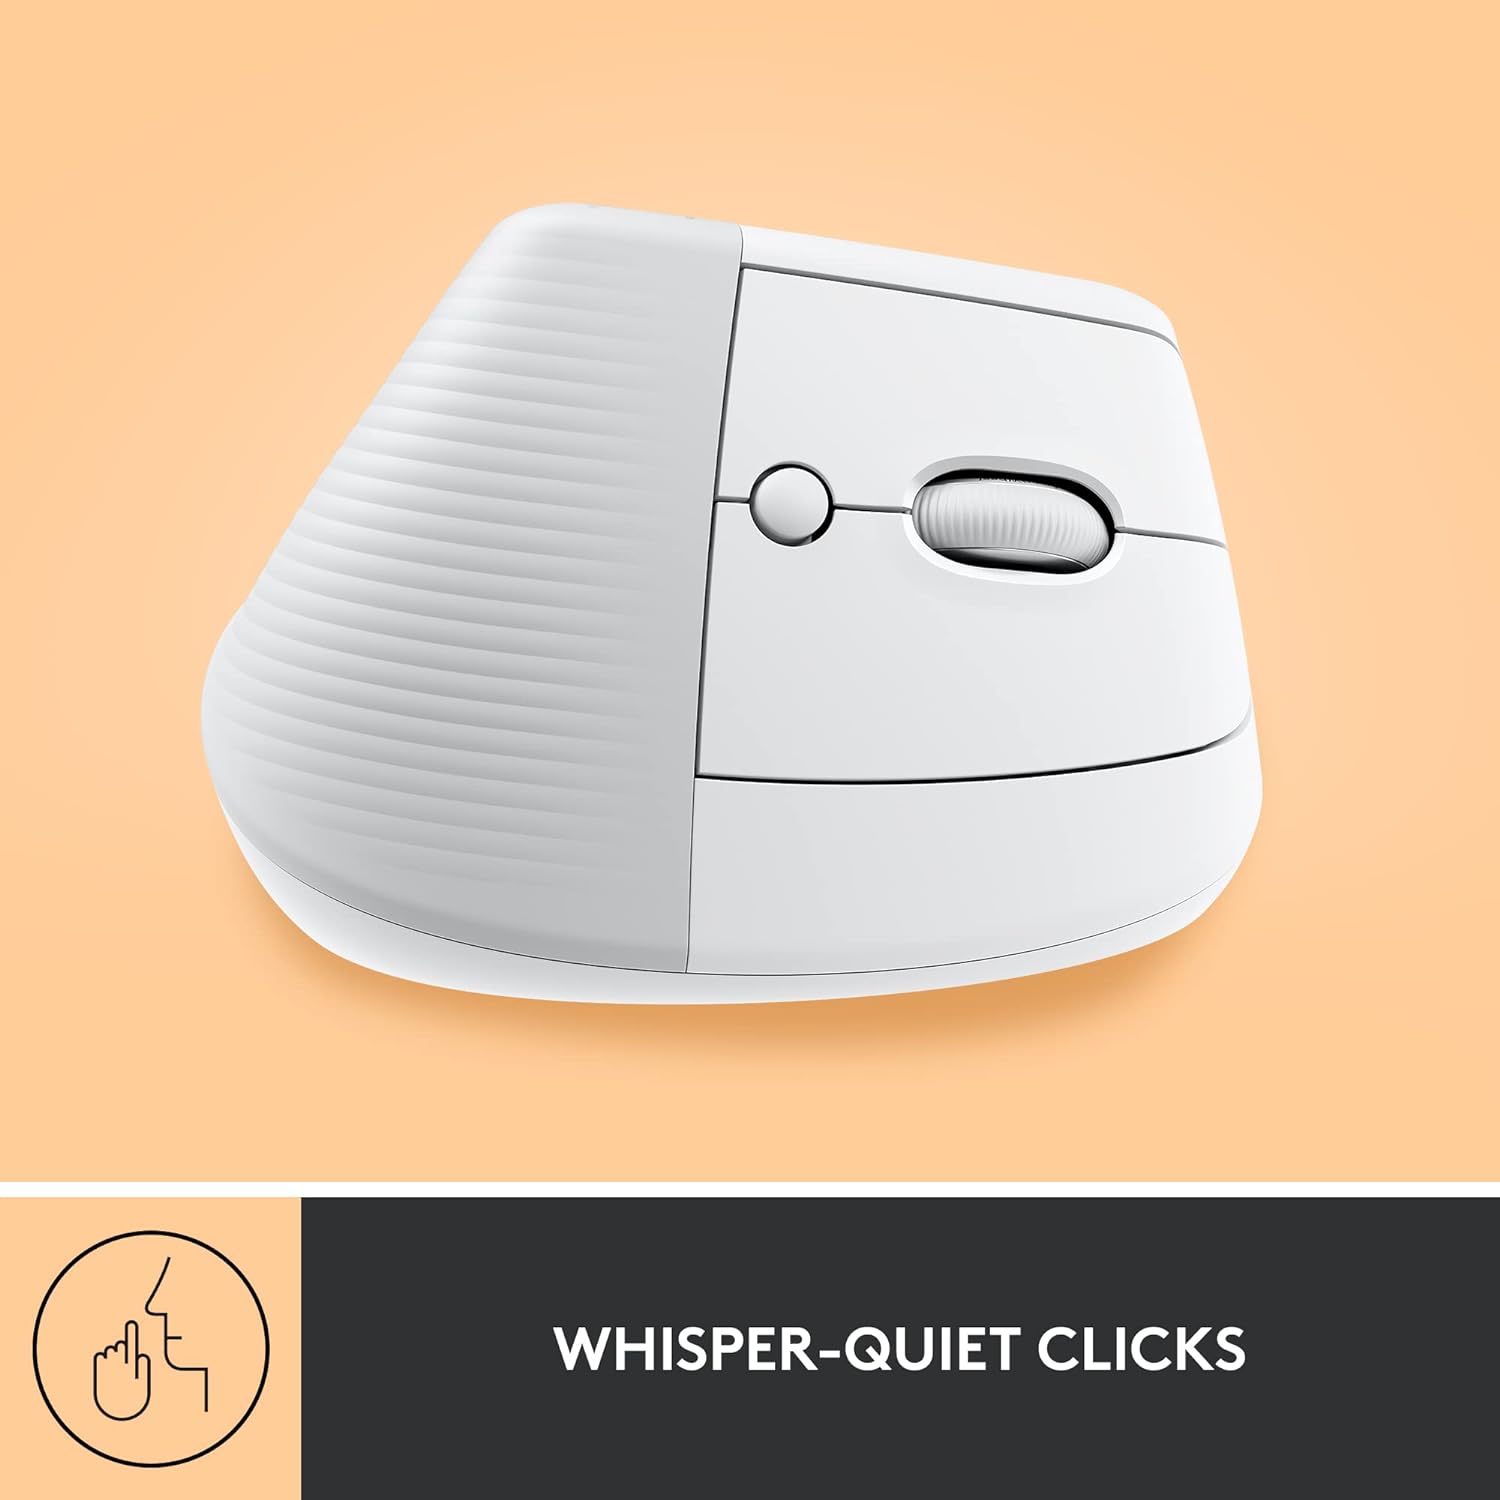 Logitech LIFT Vertical Mouse Ergonomic Wireless + Bluetooth